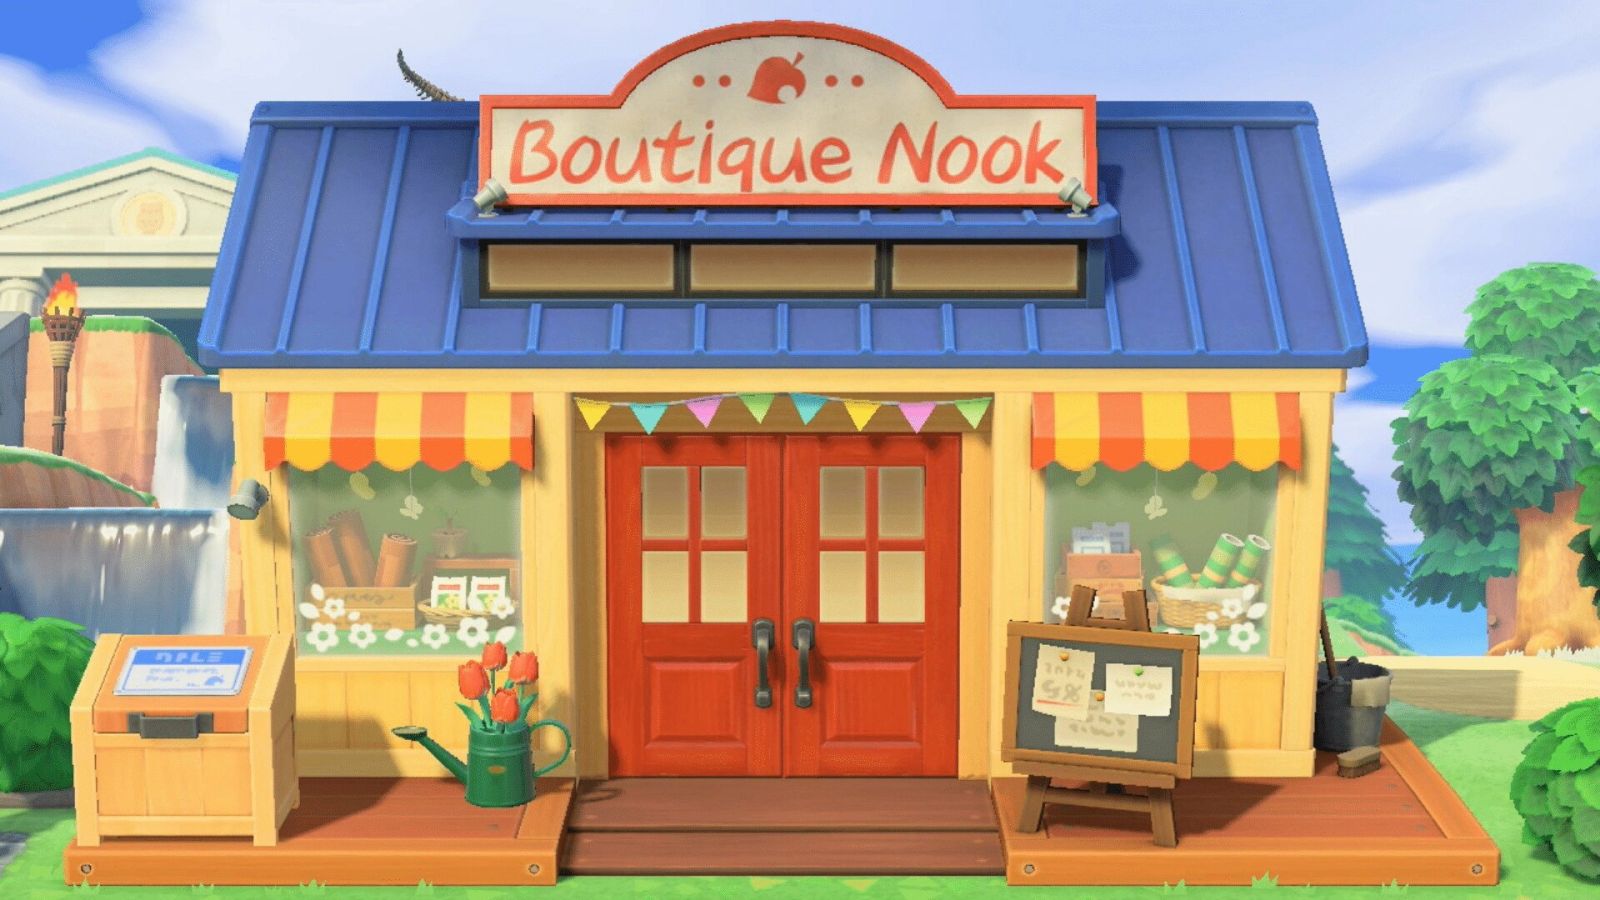 Boutique Nook améliorée dans Animal Crossing: New Horizons.